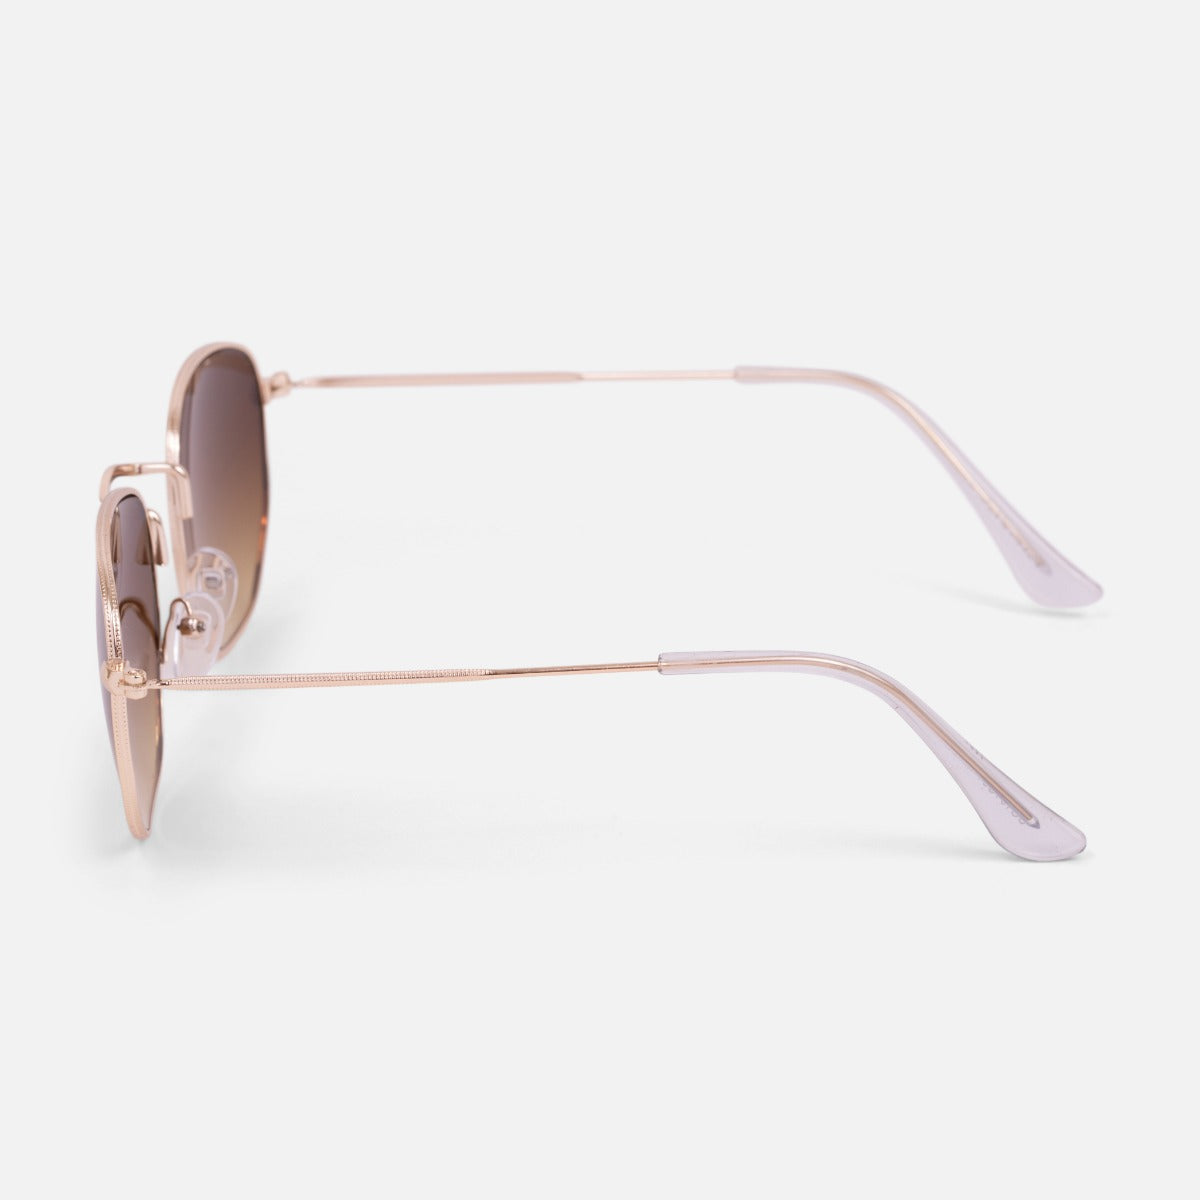 Sunglasses with slightly hexagonal lenses